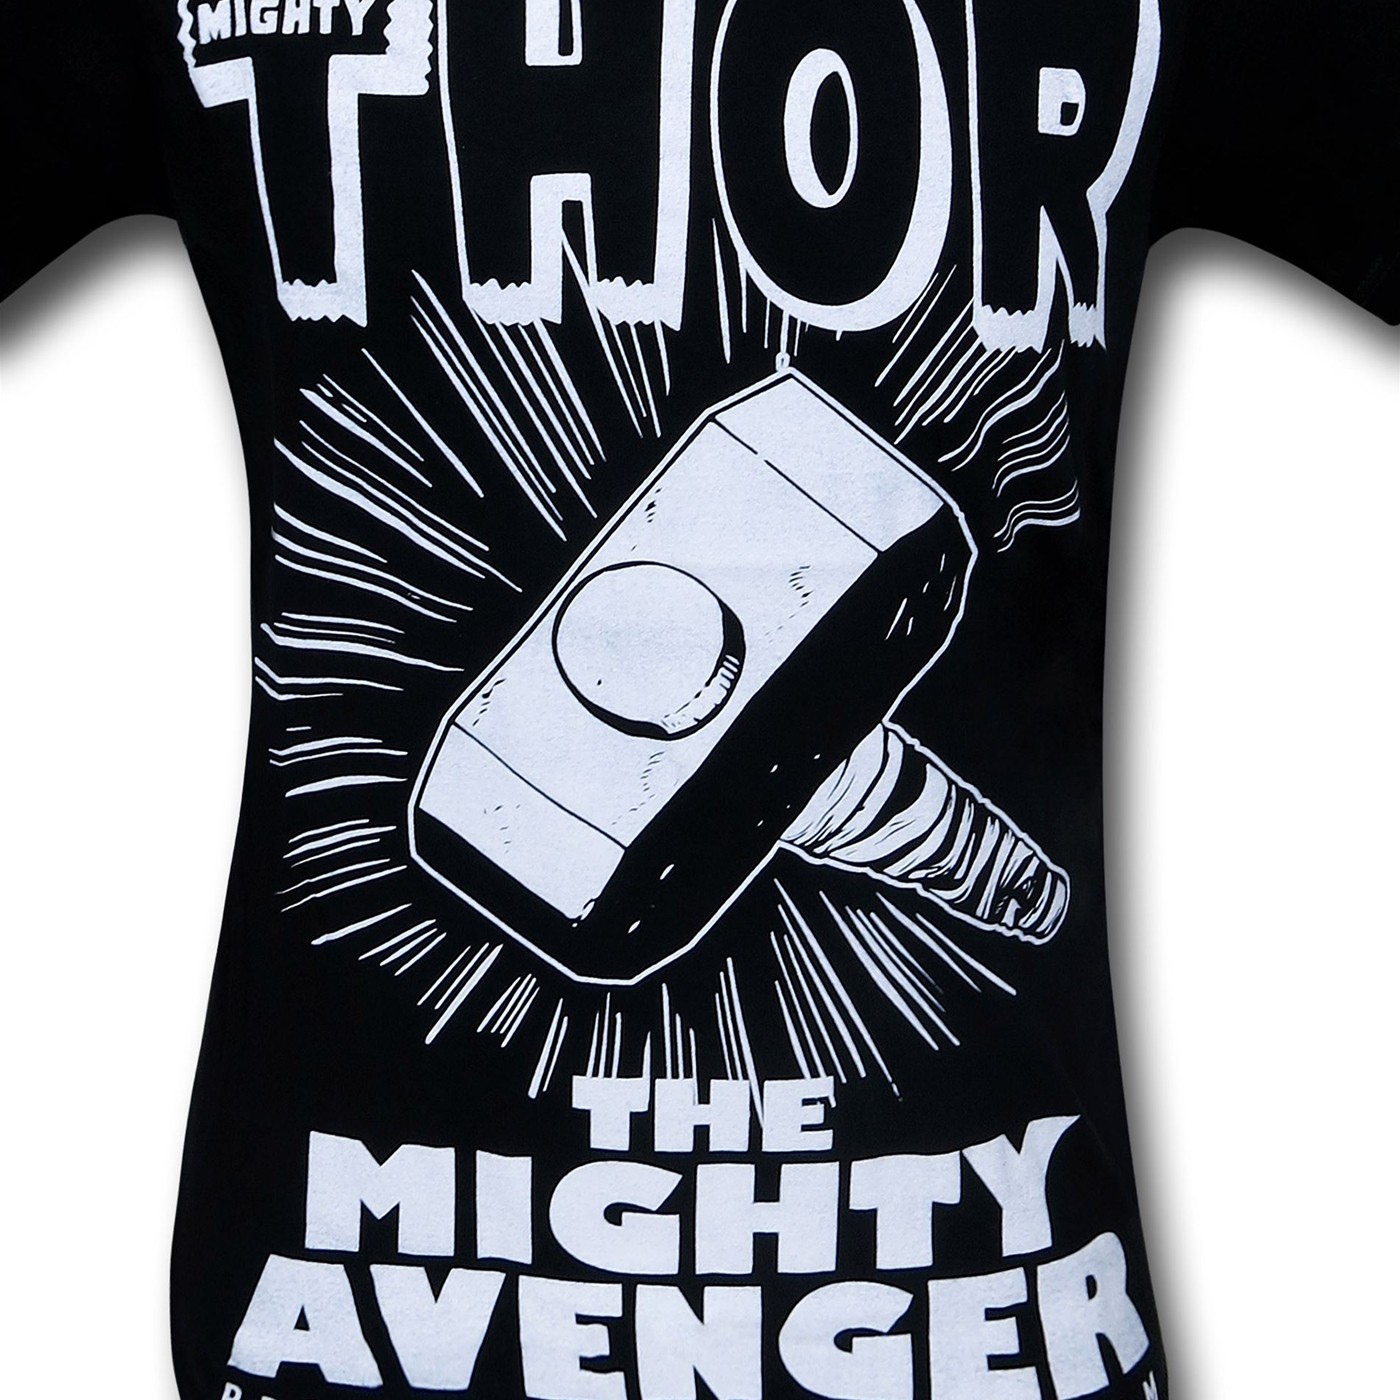 Thor The Mighty Avenger Mjolnir Black T-Shirt